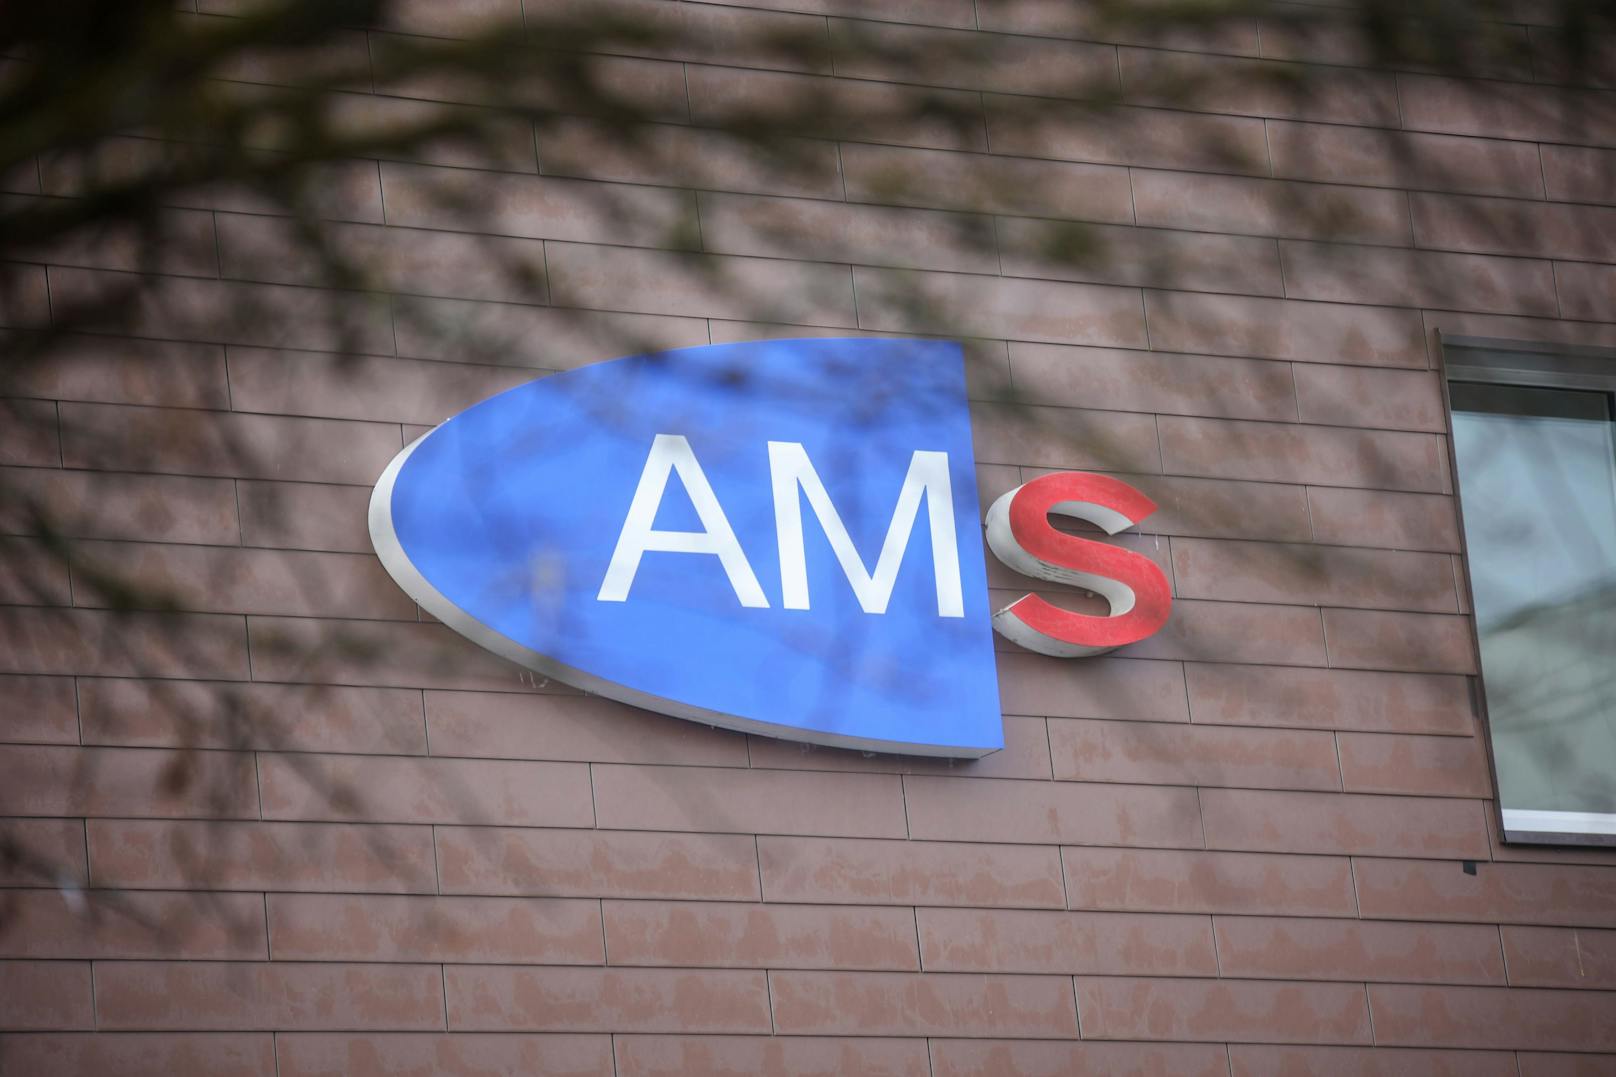 Das AMS kann Arbeitsbewilligungen innerhalb von 3 Tagen ausstellen.